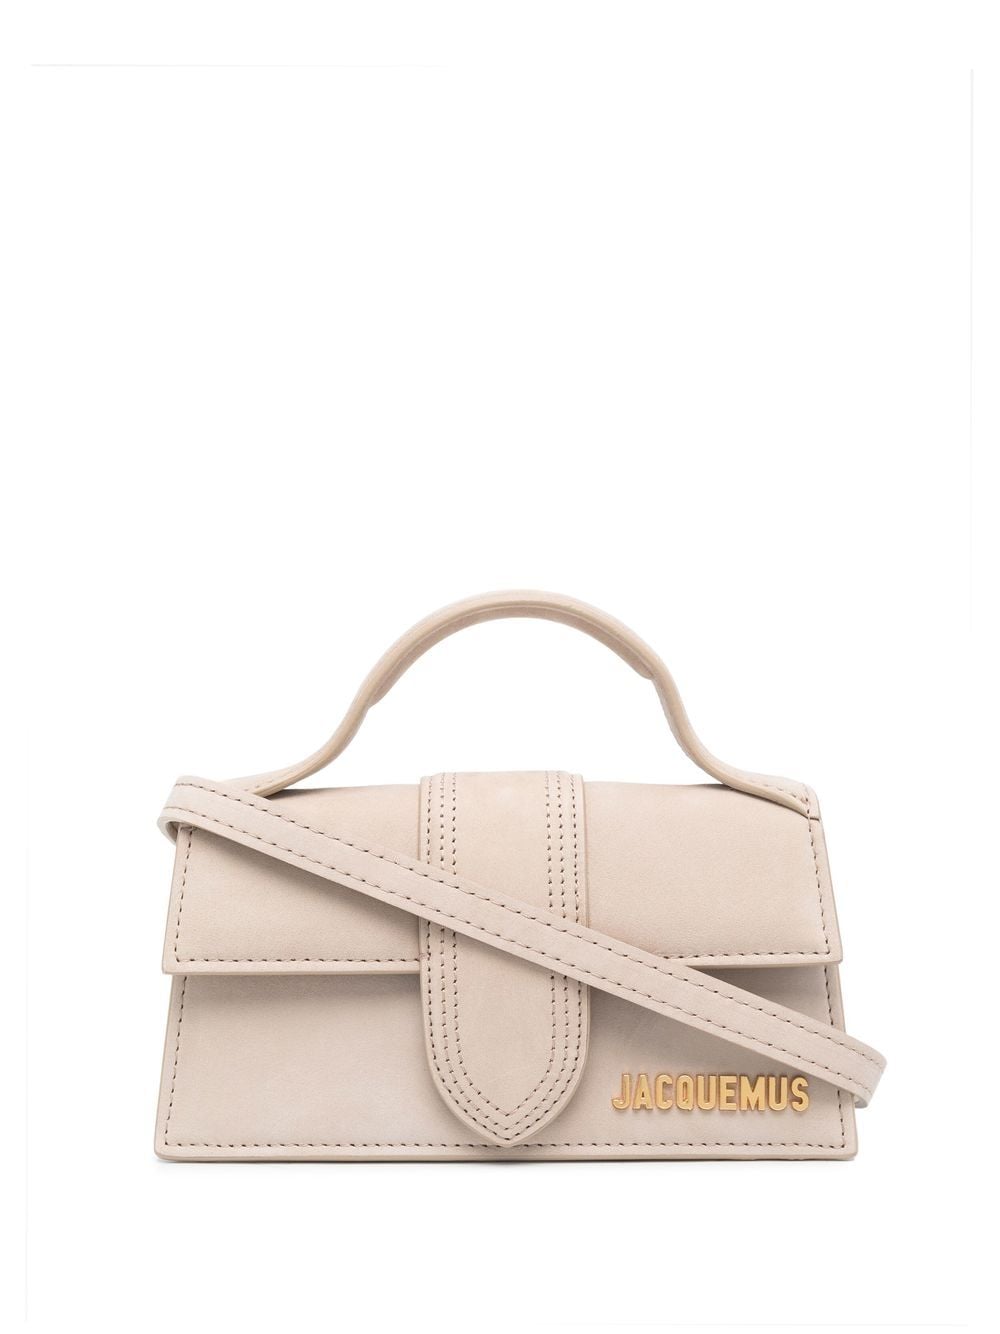 JACQUEMUS Beige Suede Handbag with Gold Logo Detail and Adjustable Shoulder Strap